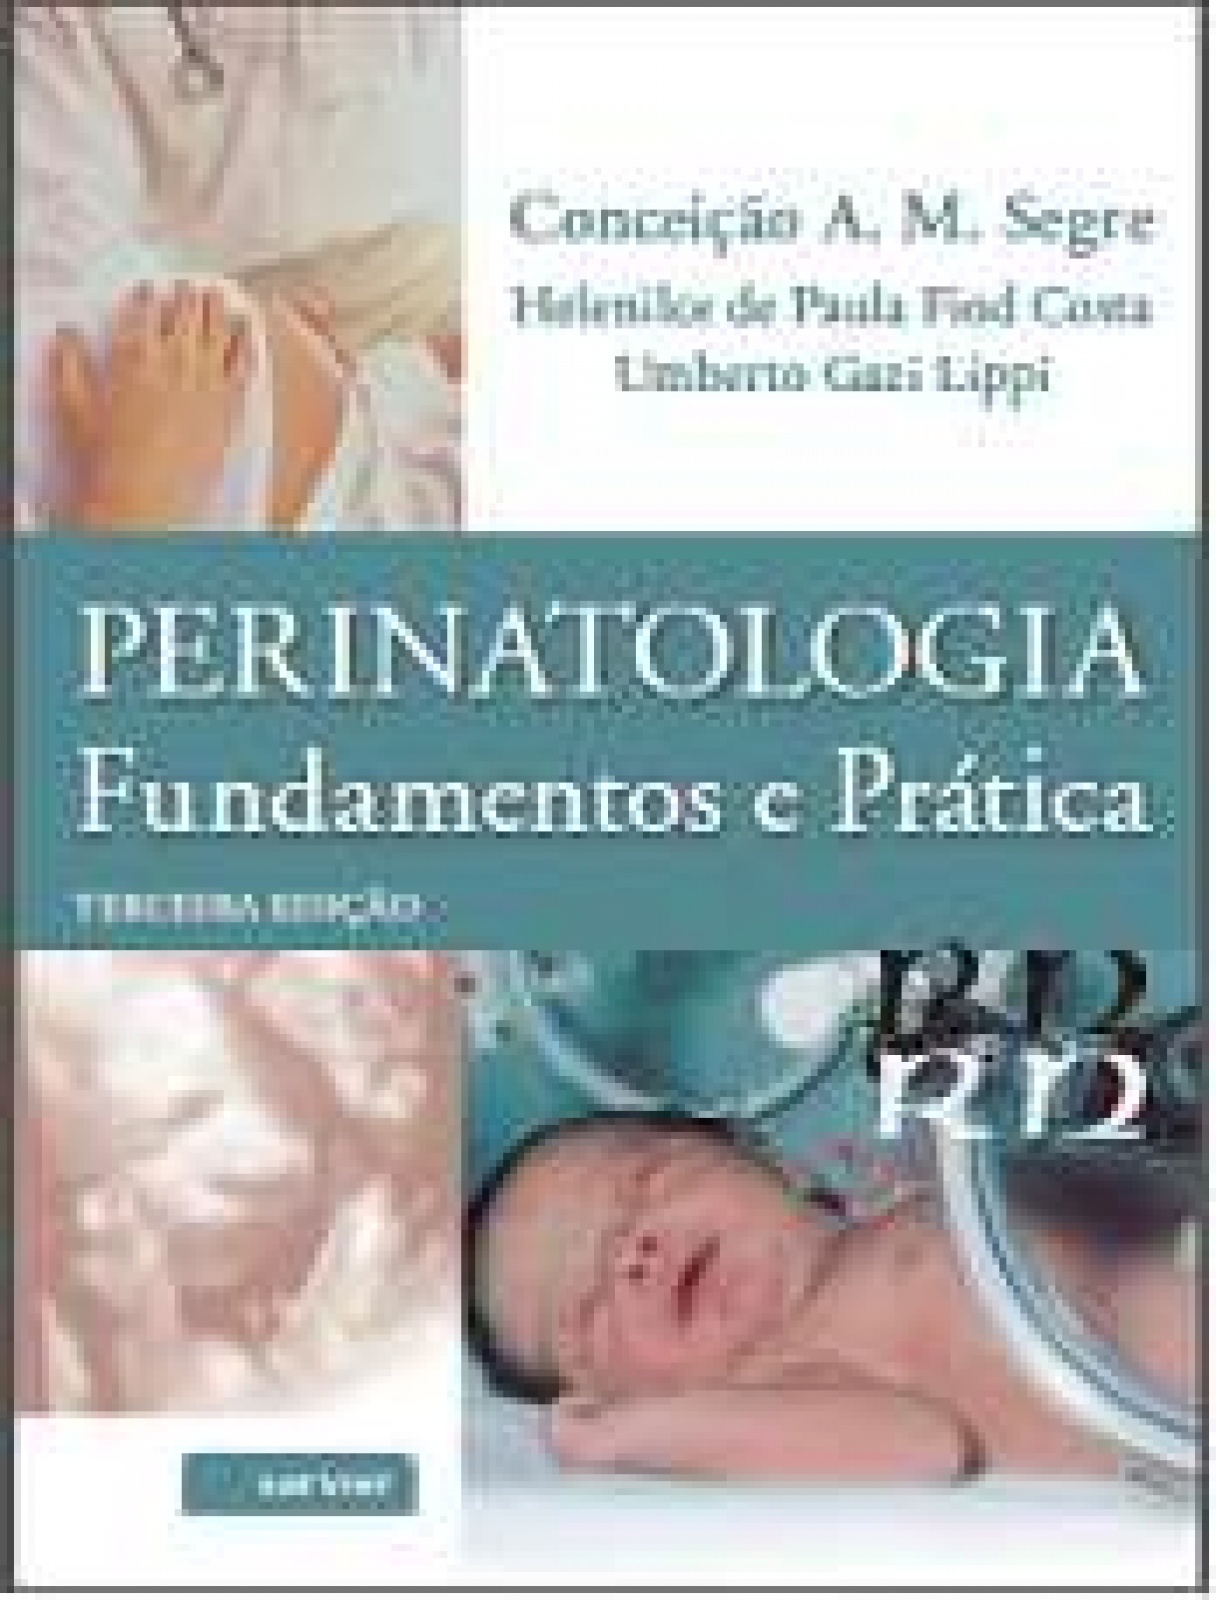 Perinatologia - Fundamentos E Pratica